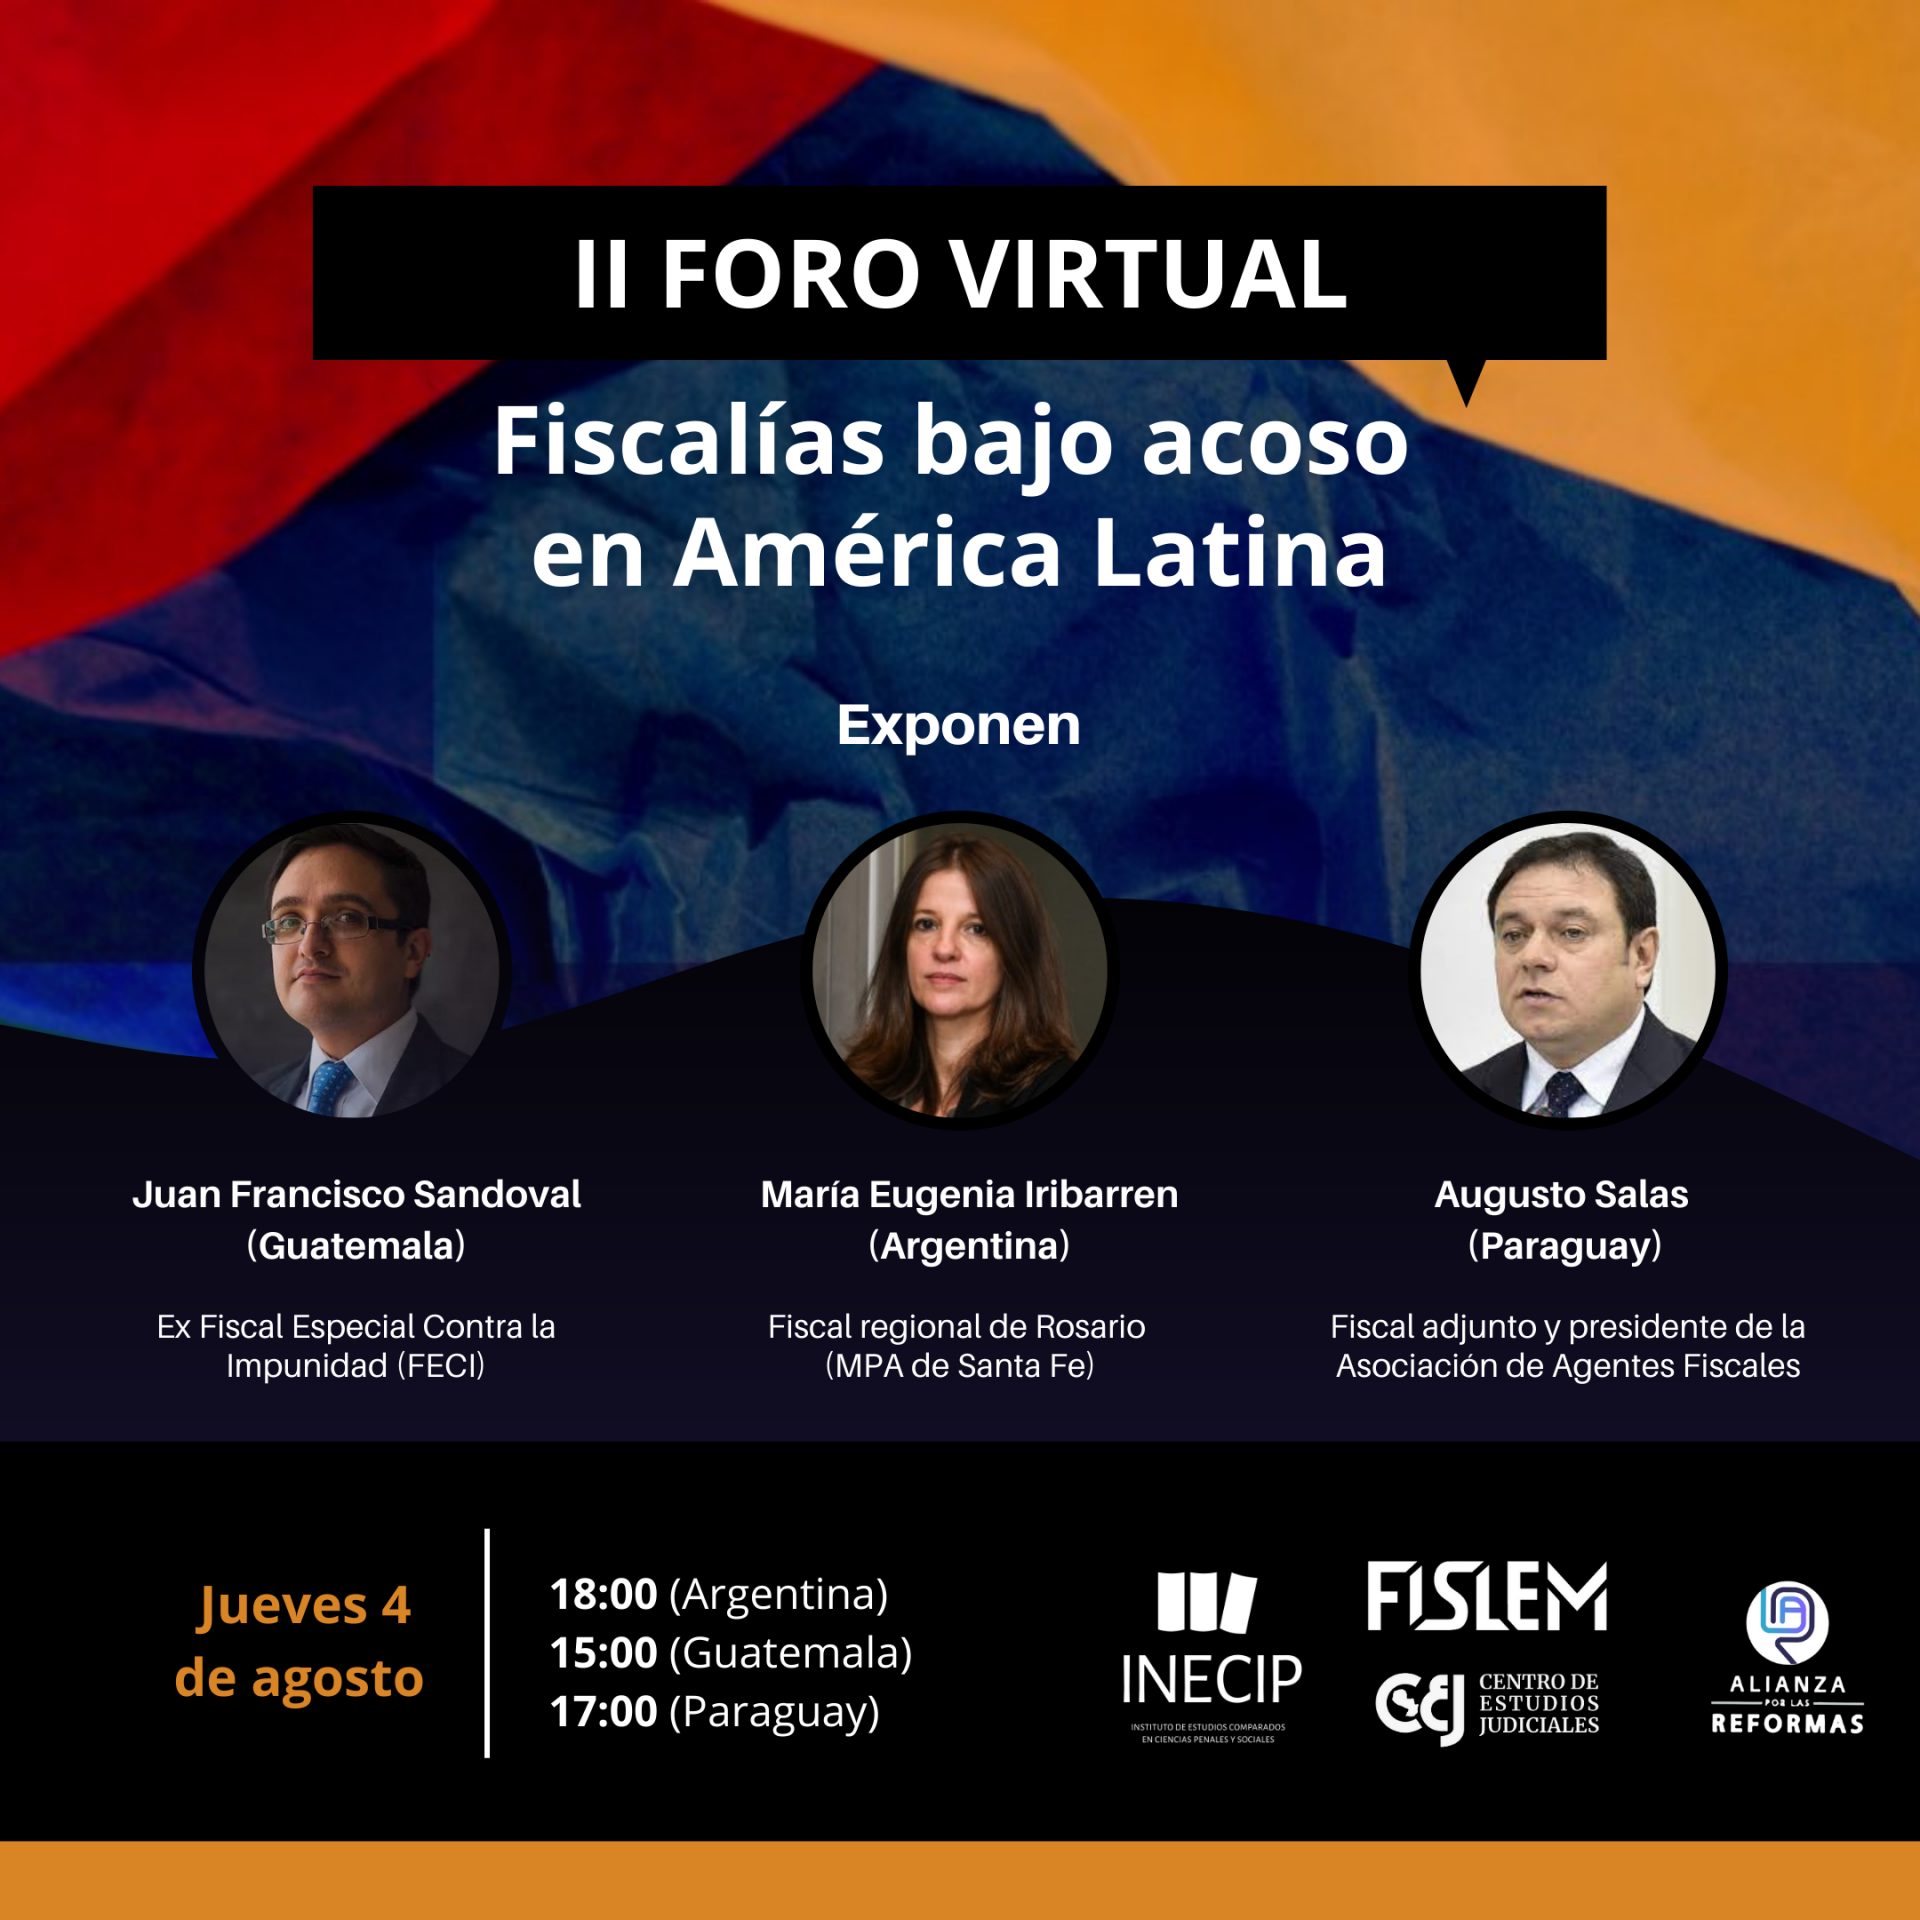 Se realizará el II Foro virtual "Fiscalías bajo acoso en América Latina".